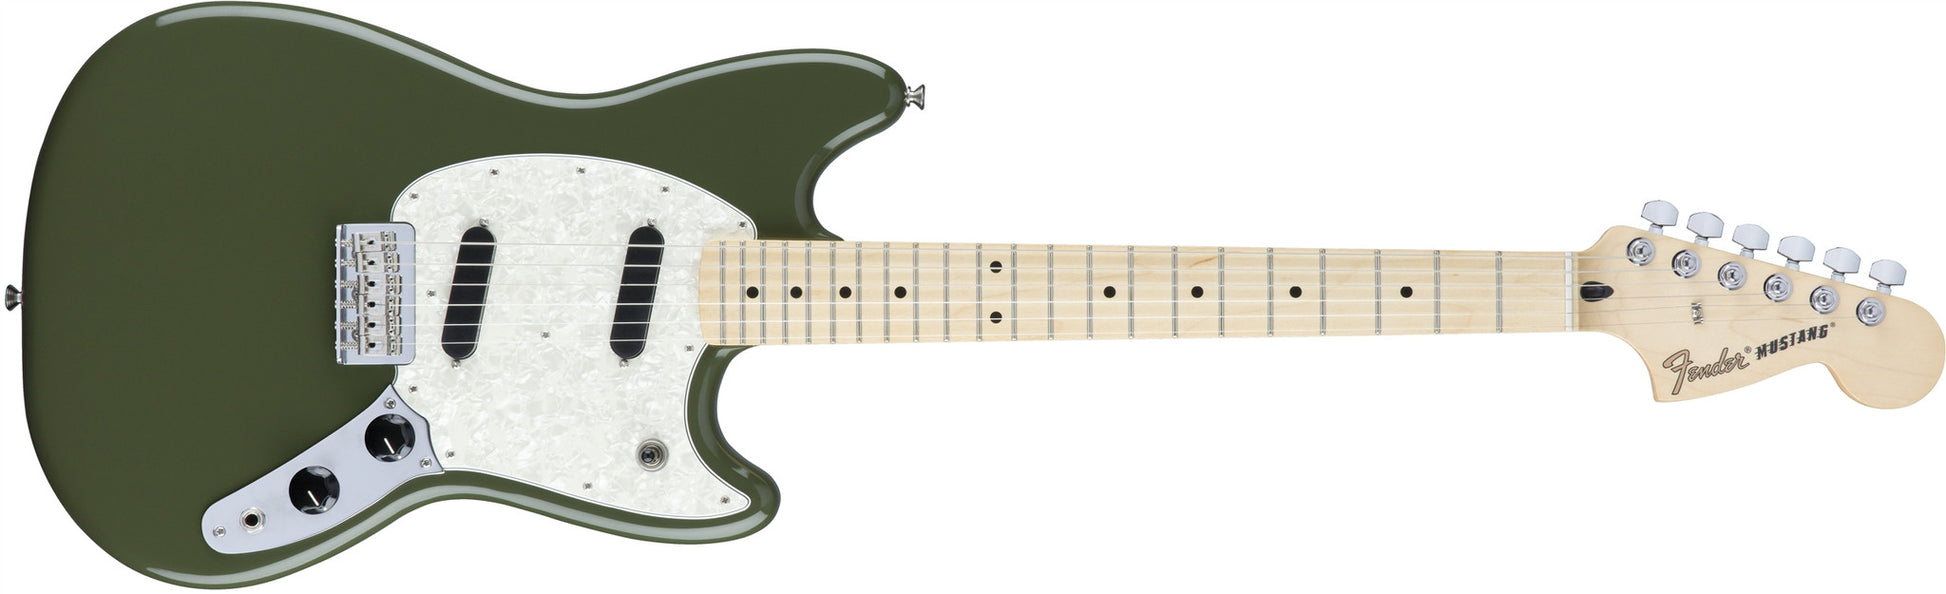 Fender Mustang - Garrett Park Guitars
 - 6